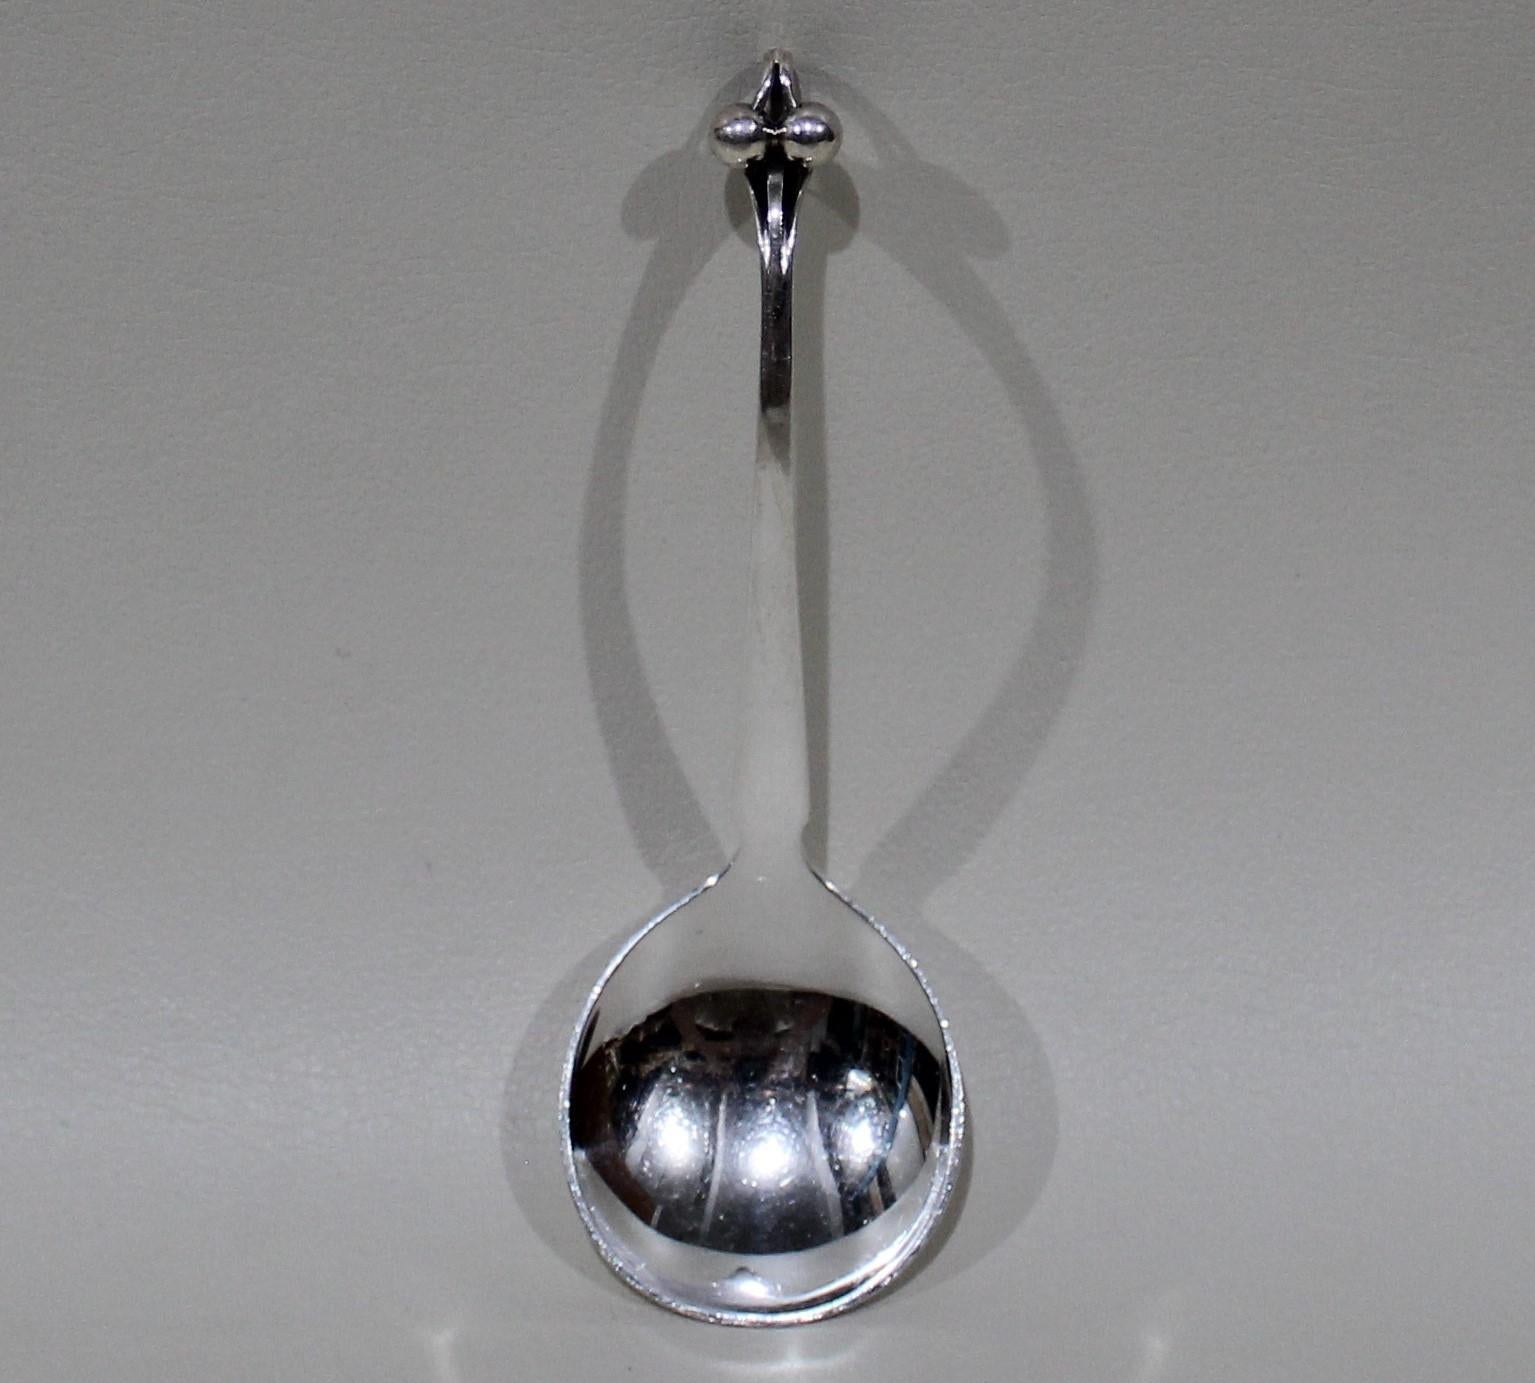 Georg Jensen sterling silver ornamental serving spoon, model 97. 

